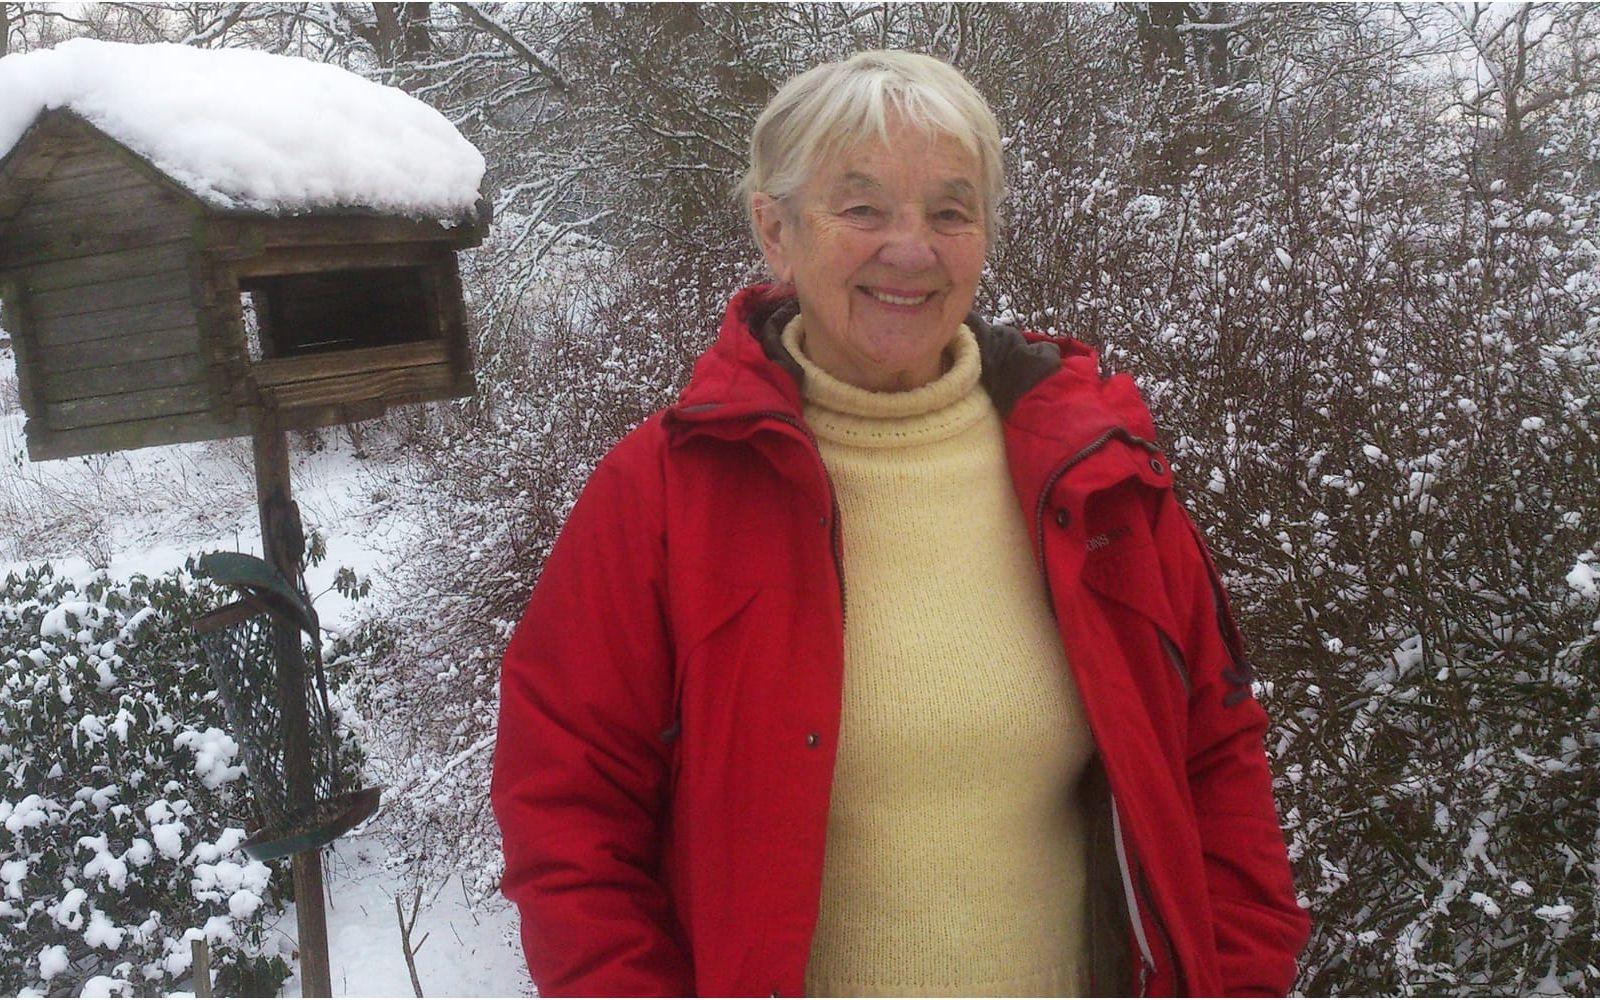 Gerda Antti är född 1929 i Övertorneå i Norrbotten och växte upp i ett lantbrukarhem. 1950 flyttade hon till Stockholm men bor i dag utanför Kisa i Östergötland. Utöver sina nu 21 böcker har Gerda Antti regelbundet skrivit kåserier i Östgöta Correspondenten, och varit politiskt engagerad i Centerpartiet.